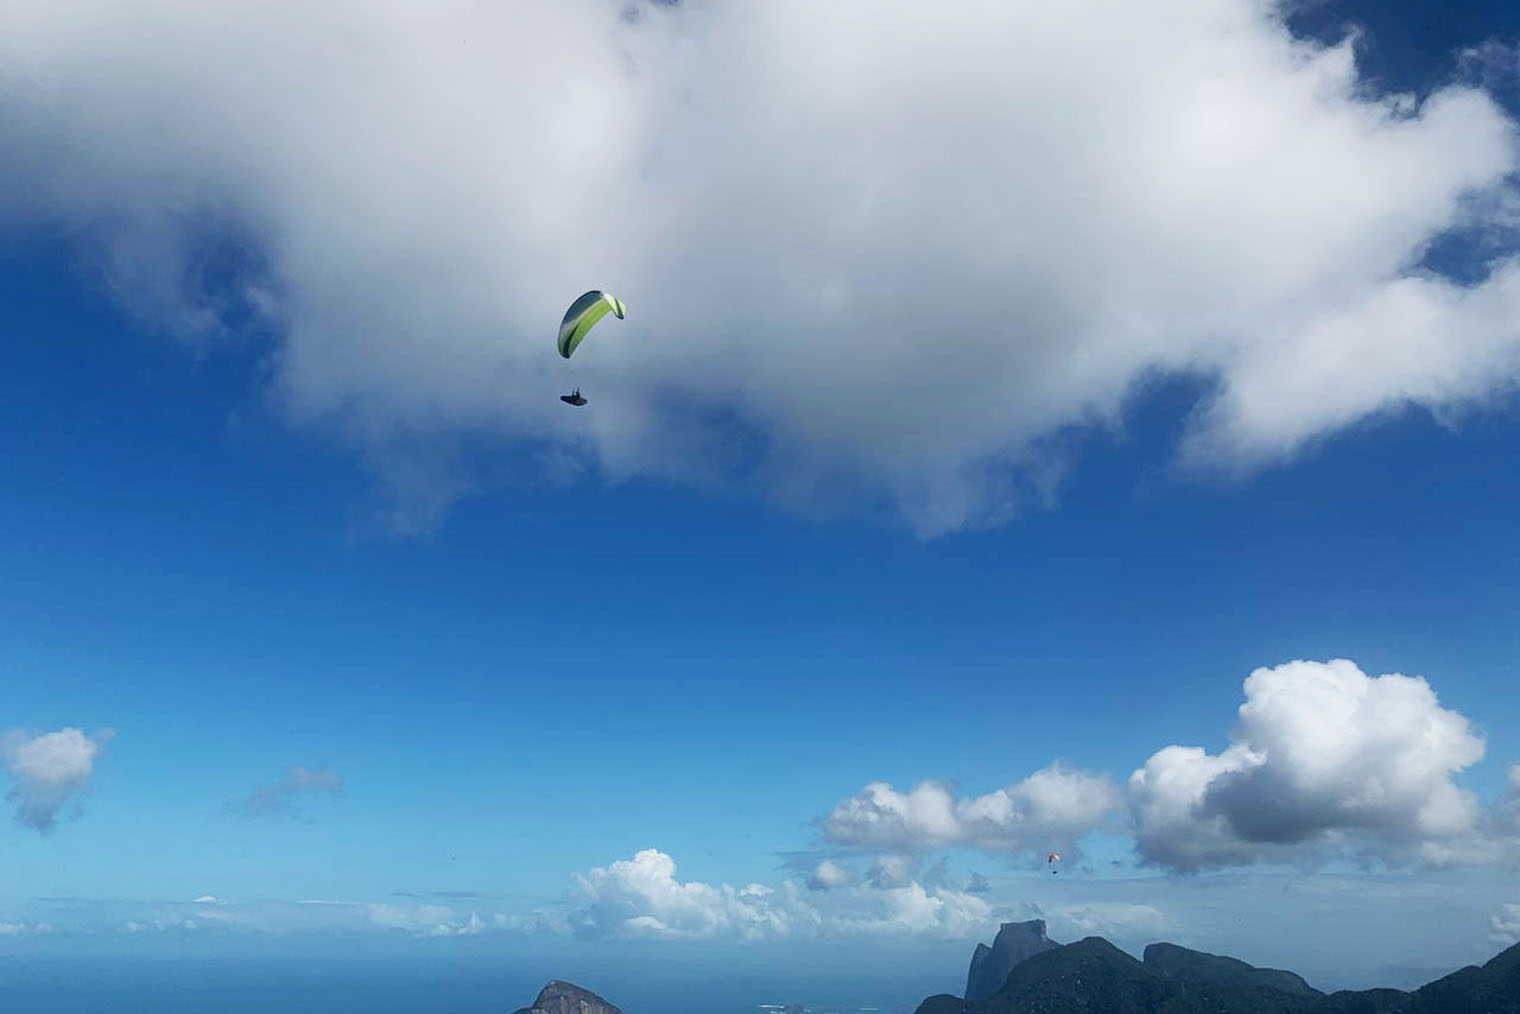 Я не рискнула, но другие туристы говорили друг другу, что полетать над Рио — лучшее решение